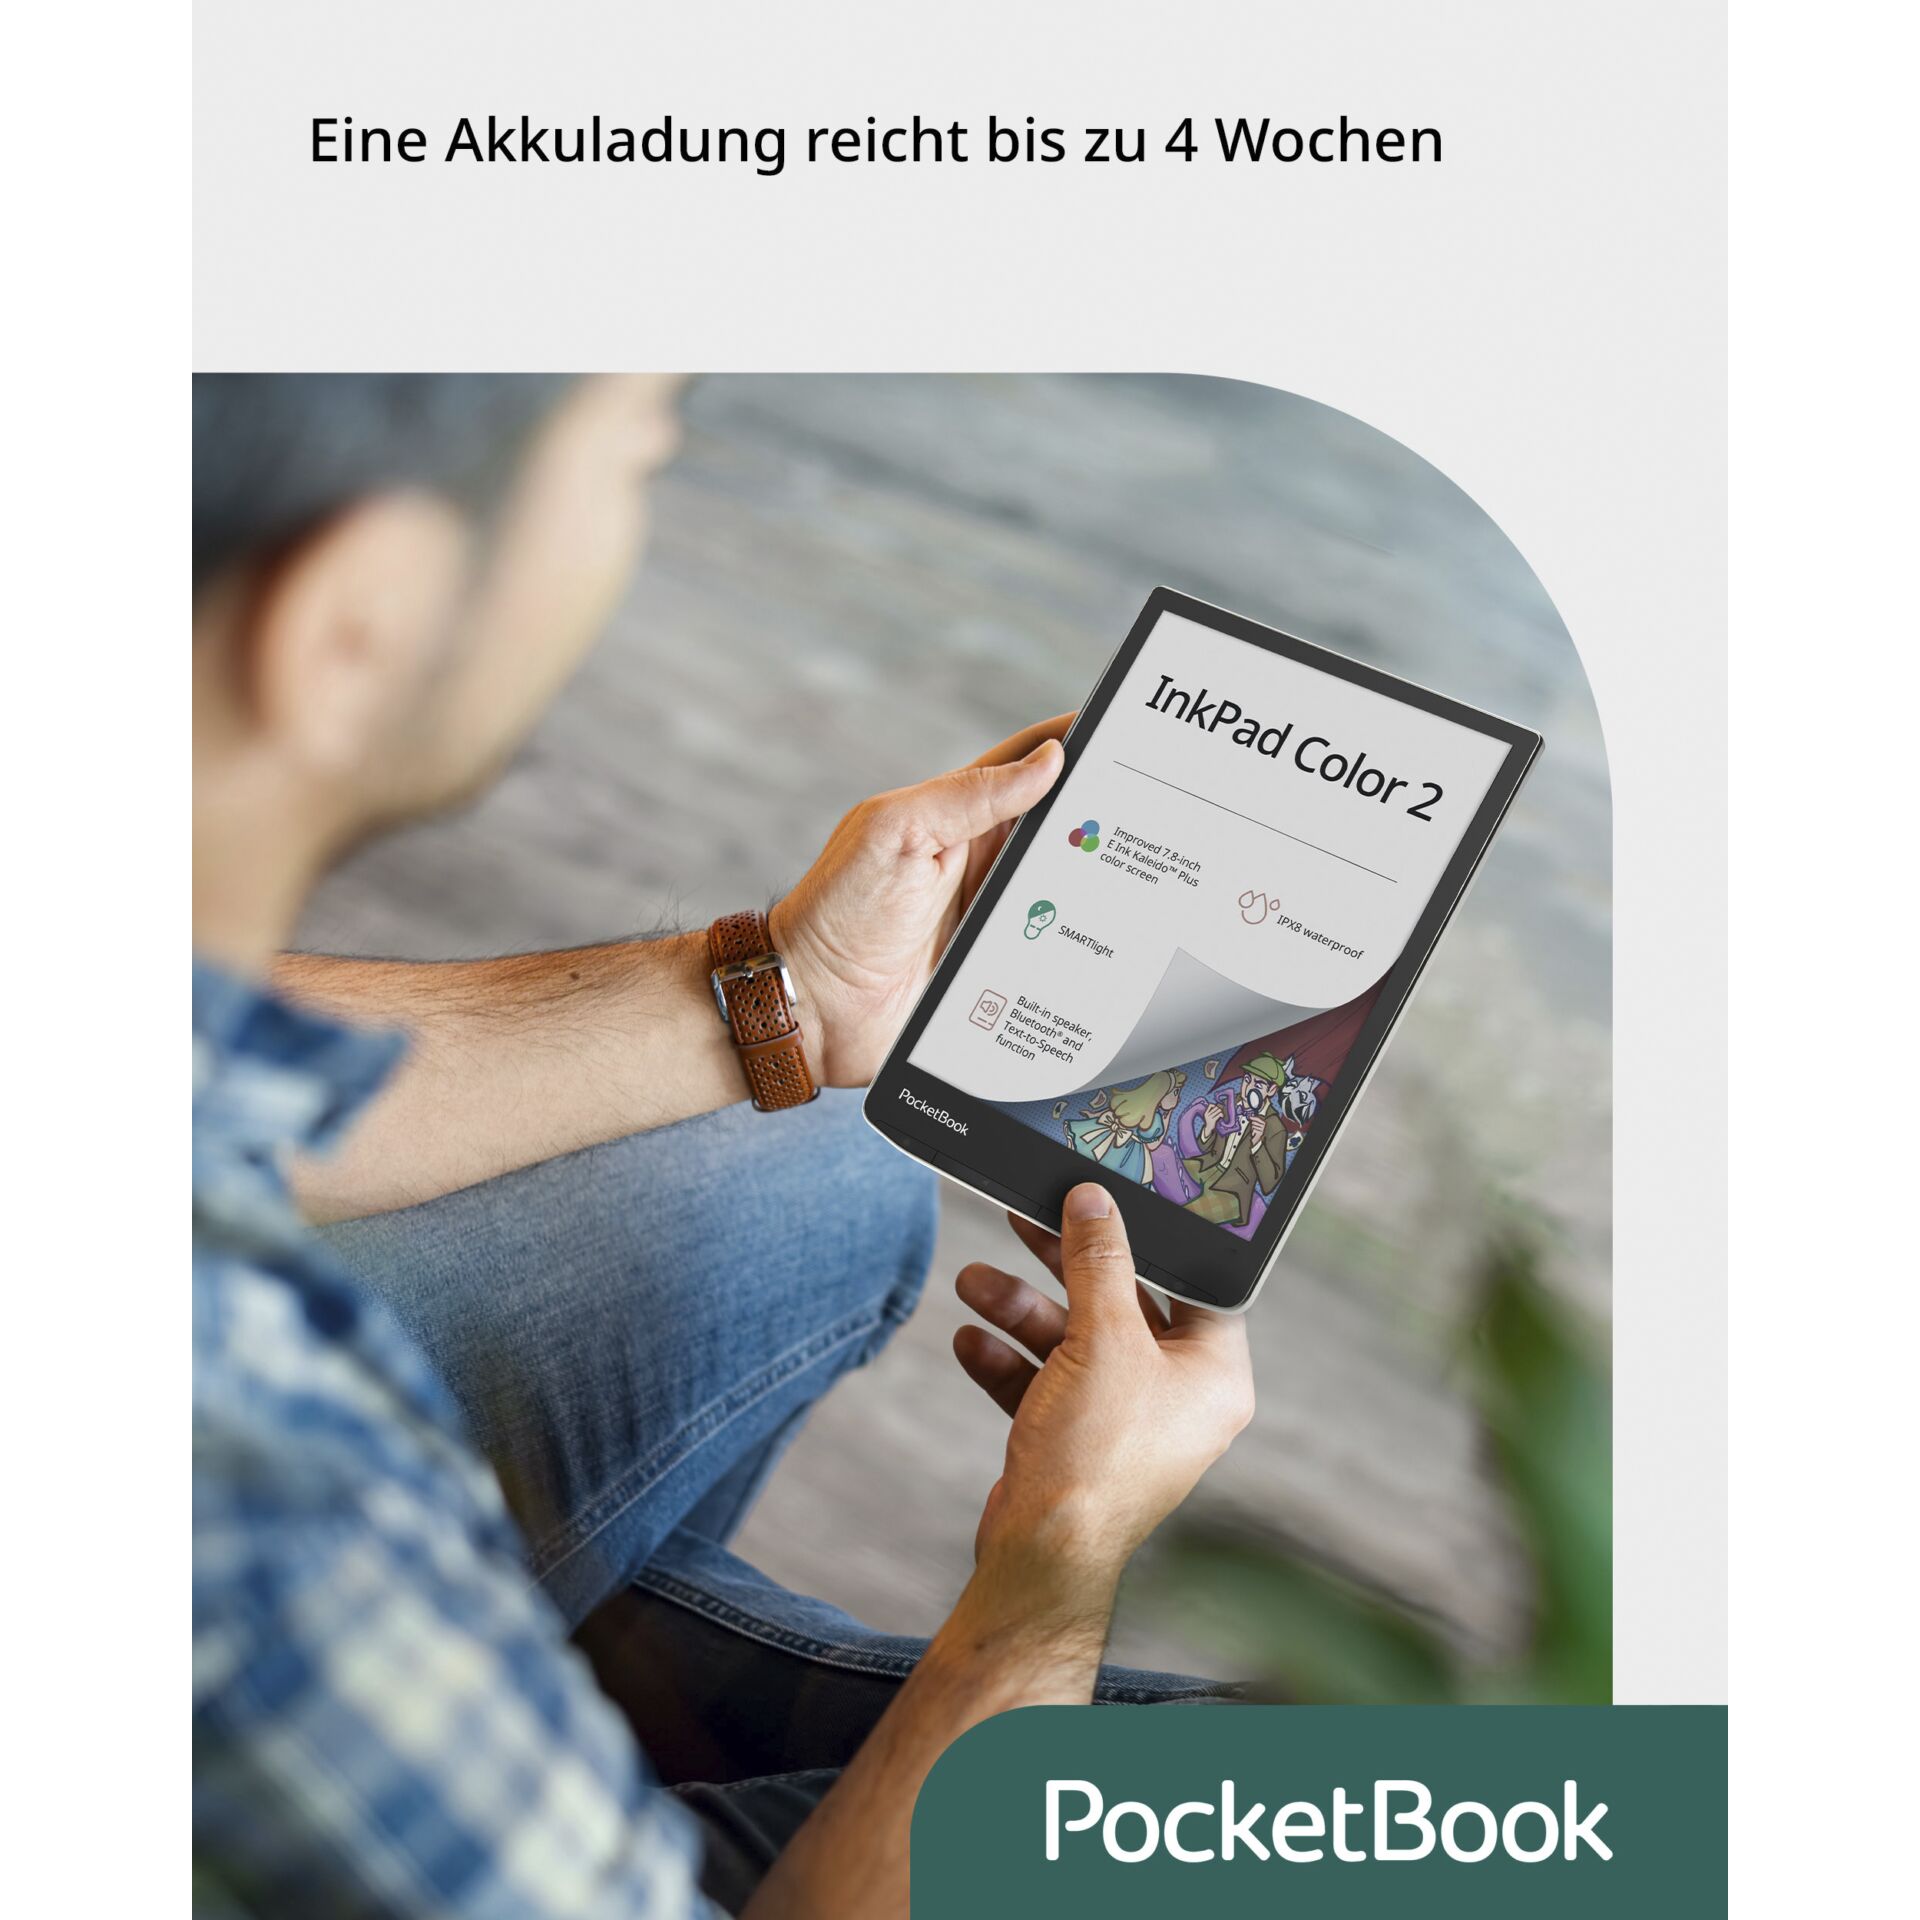 Ebook Pocketbook inkpad 2 color 7.8 16GB moon silver